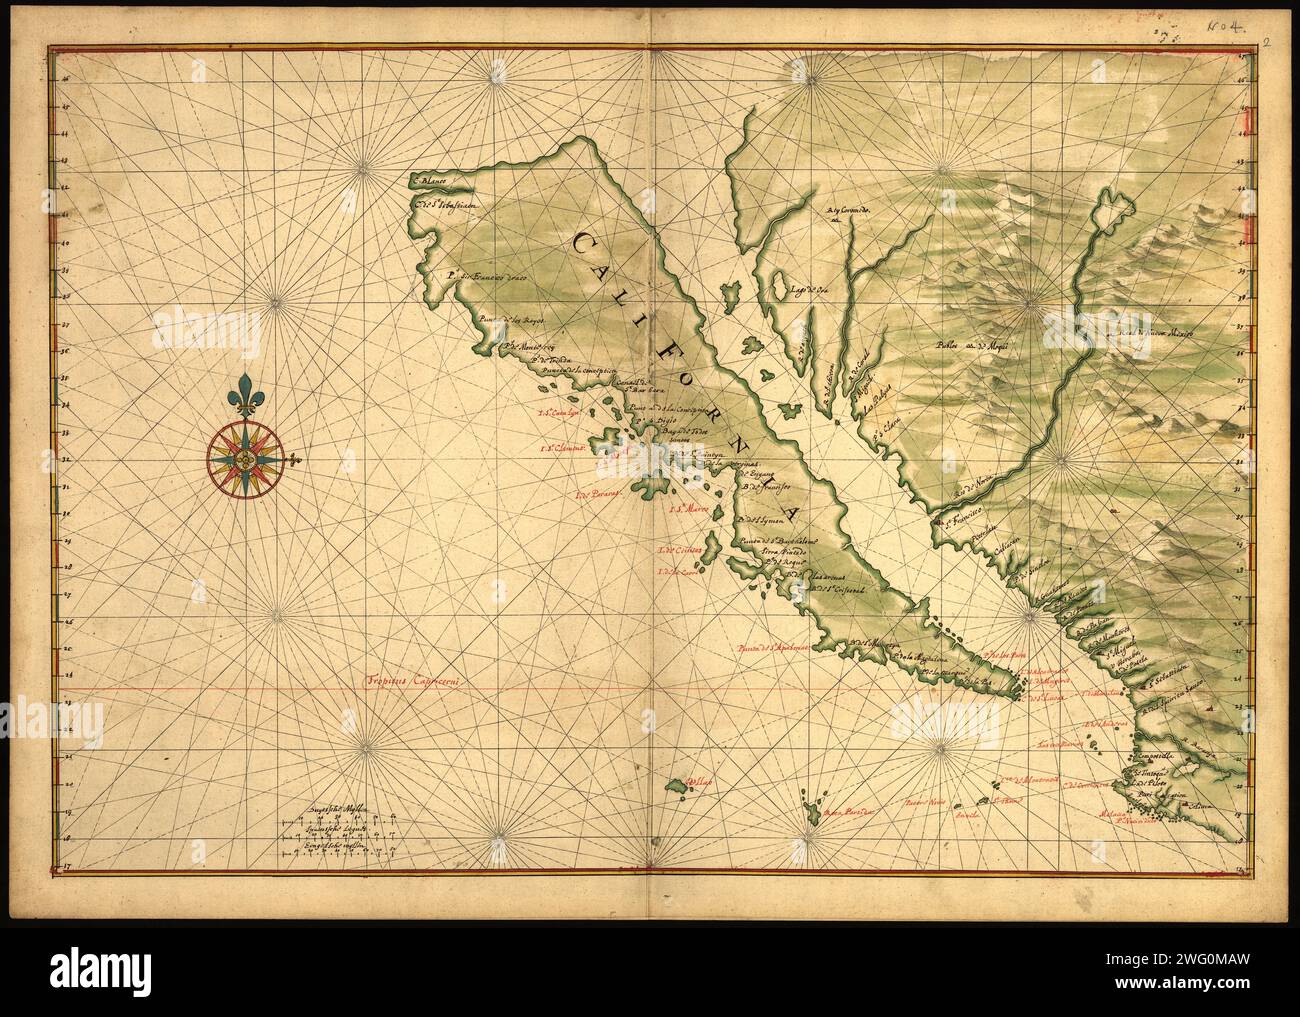 Mappa della California mostrata come un'isola, c 1650. Questa mappa del 1650 circa mostra la California come un'isola. Sarebbe passato mezzo secolo prima che gli esploratori spagnoli determinassero con certezza che la California fosse collegata alla terraferma del Nord America. I nomi dei luoghi sono accuratamente indicati sulla mappa in rosso e nero, e includono, ad esempio, Capo San Lucas (all'estremità dell'attuale Baja California), Messico e le Isole Tres Maria al largo della costa messicana. Joan Vinckeboons (1617-70) è stata una cartografa e incisore olandese nata in una famiglia di artisti di origine fiamminga. Era nella canapa Foto Stock